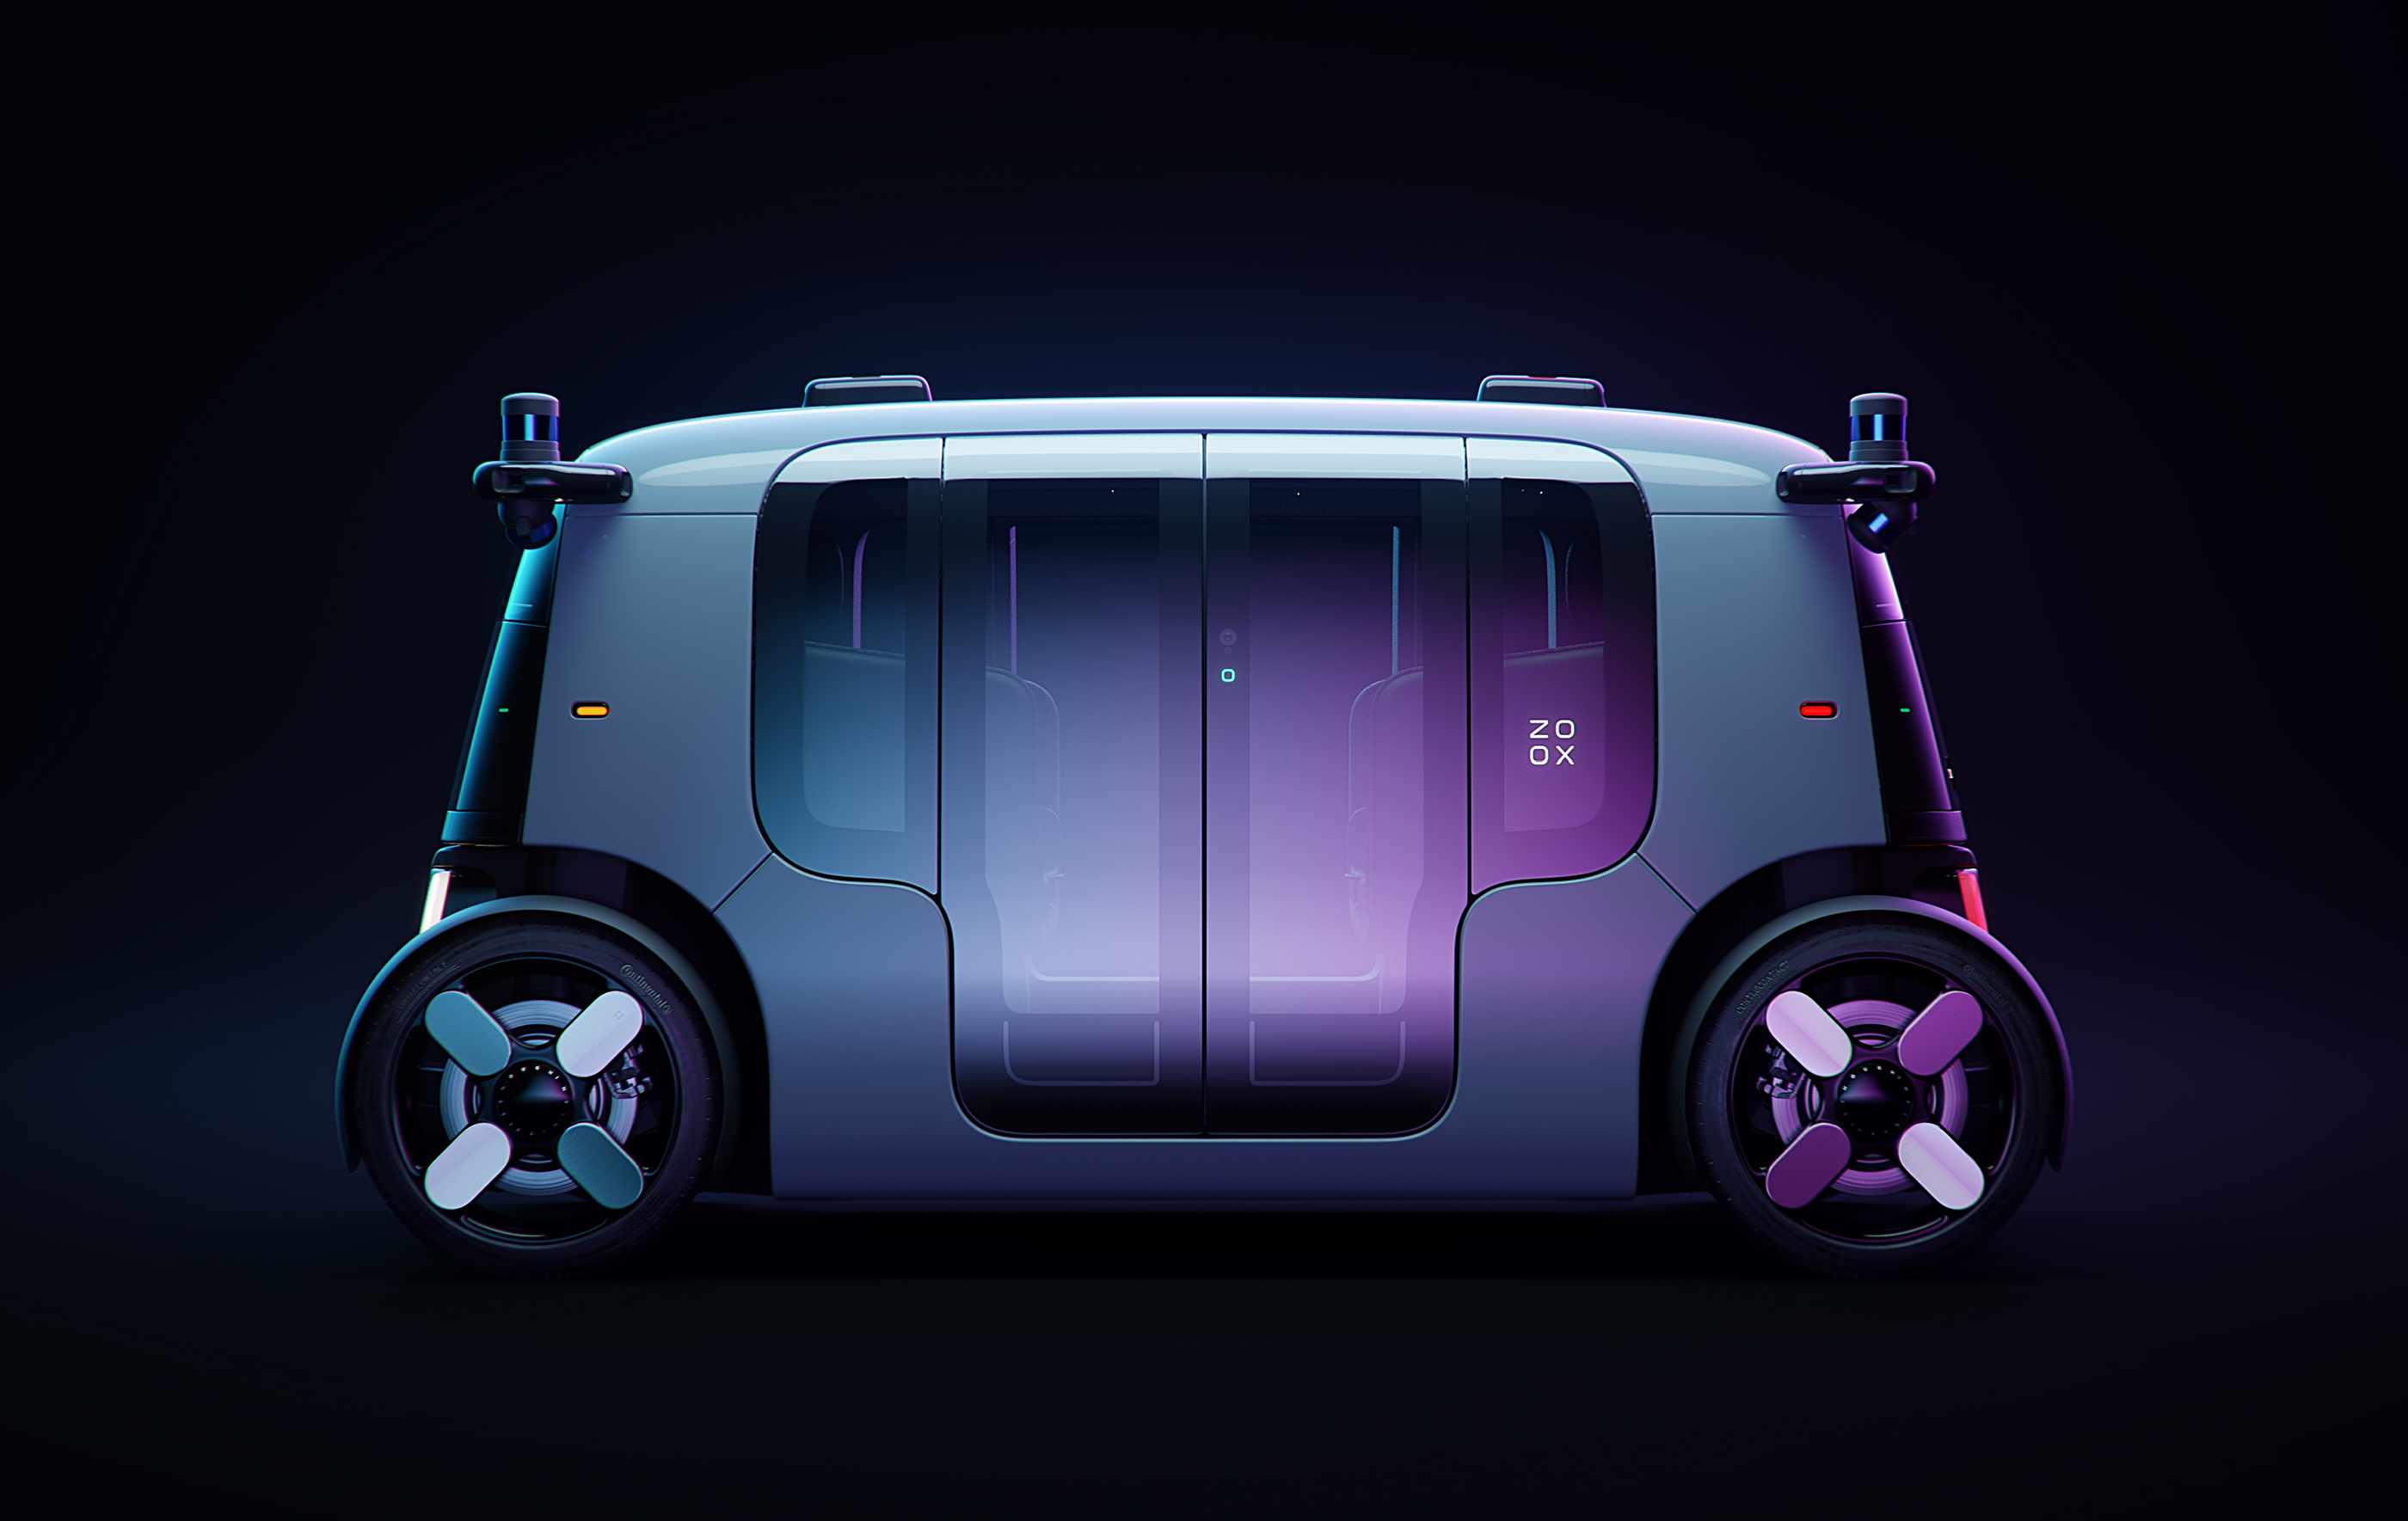 s zoox unveils autonomous electric vehicle battery pack